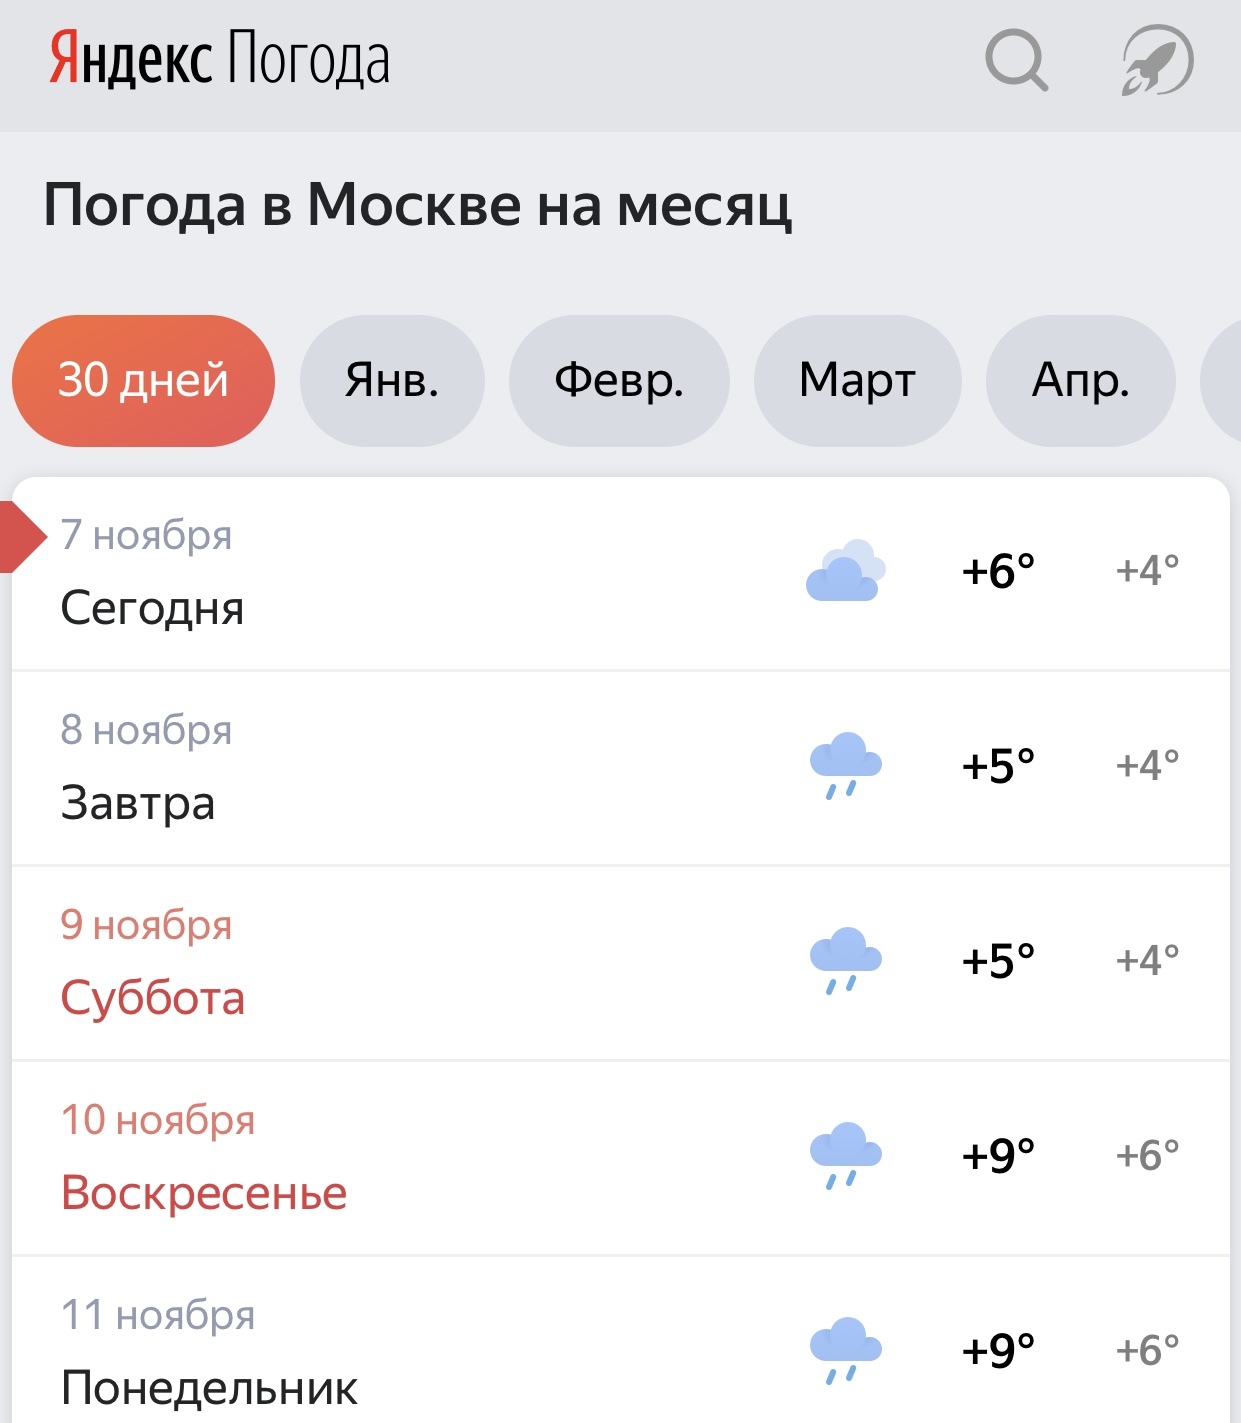 Прогноз погоды в михайловске на 14 дней. Как управлять погодой в реальной жизни.